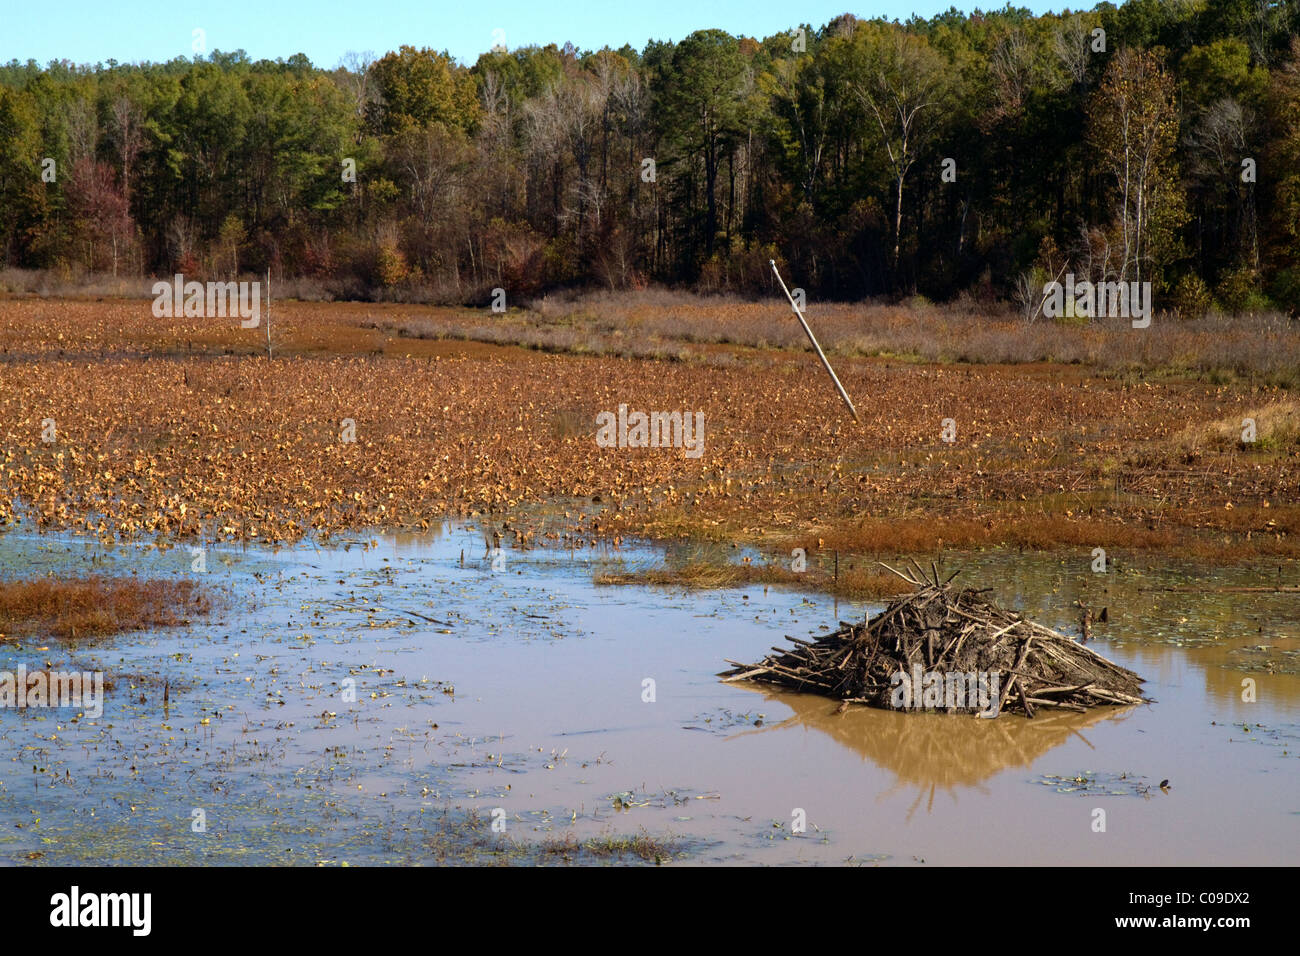 Beaver lodge in una palude lungo il fiume Tombigbee a nord di Tupelo Mississippi, Stati Uniti d'America. Foto Stock